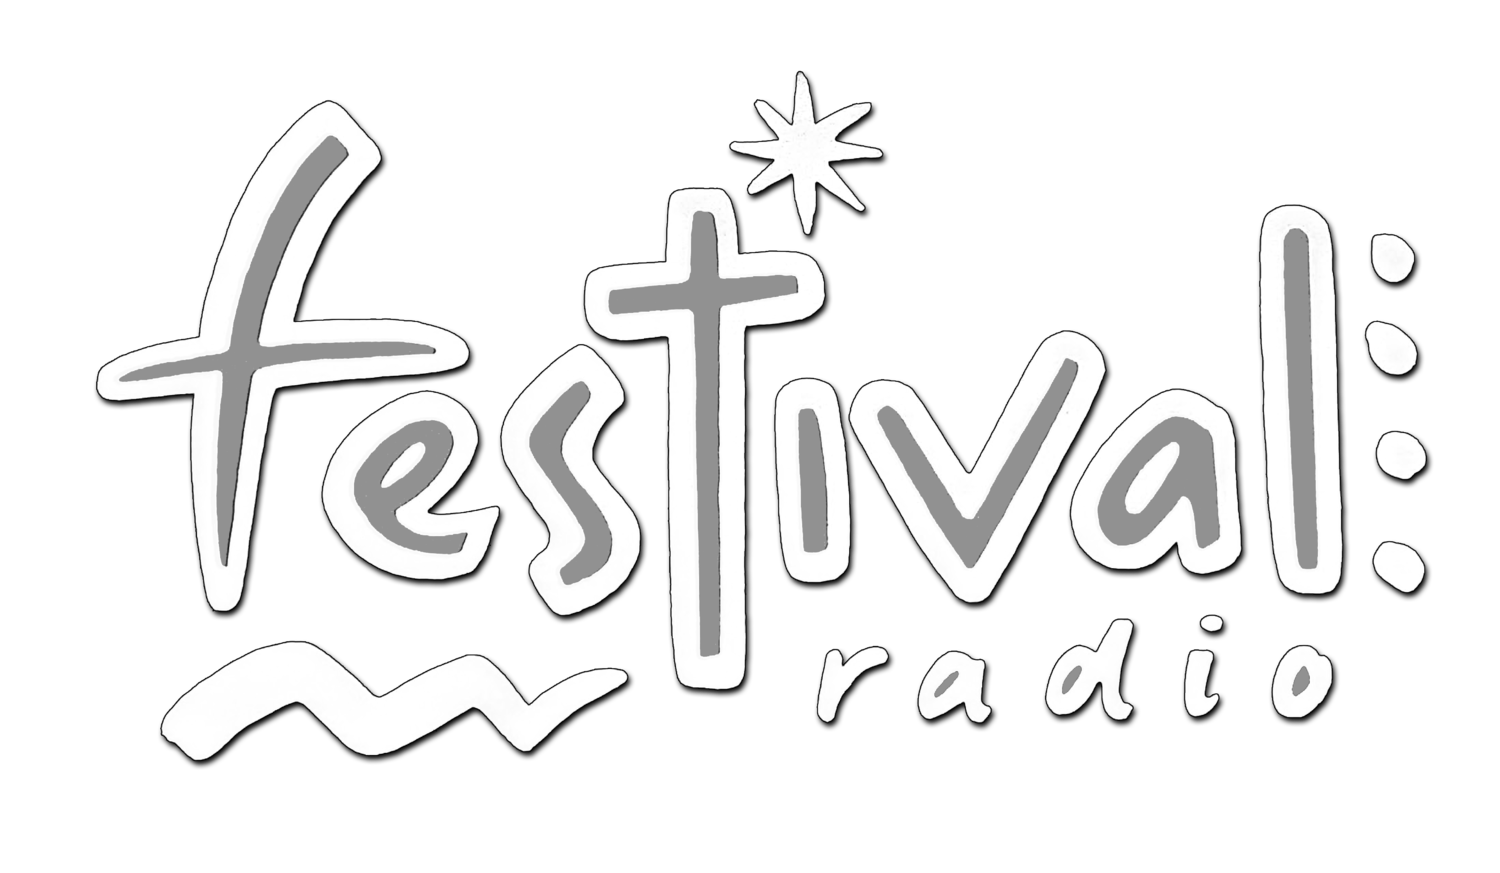 Festival Radio 30